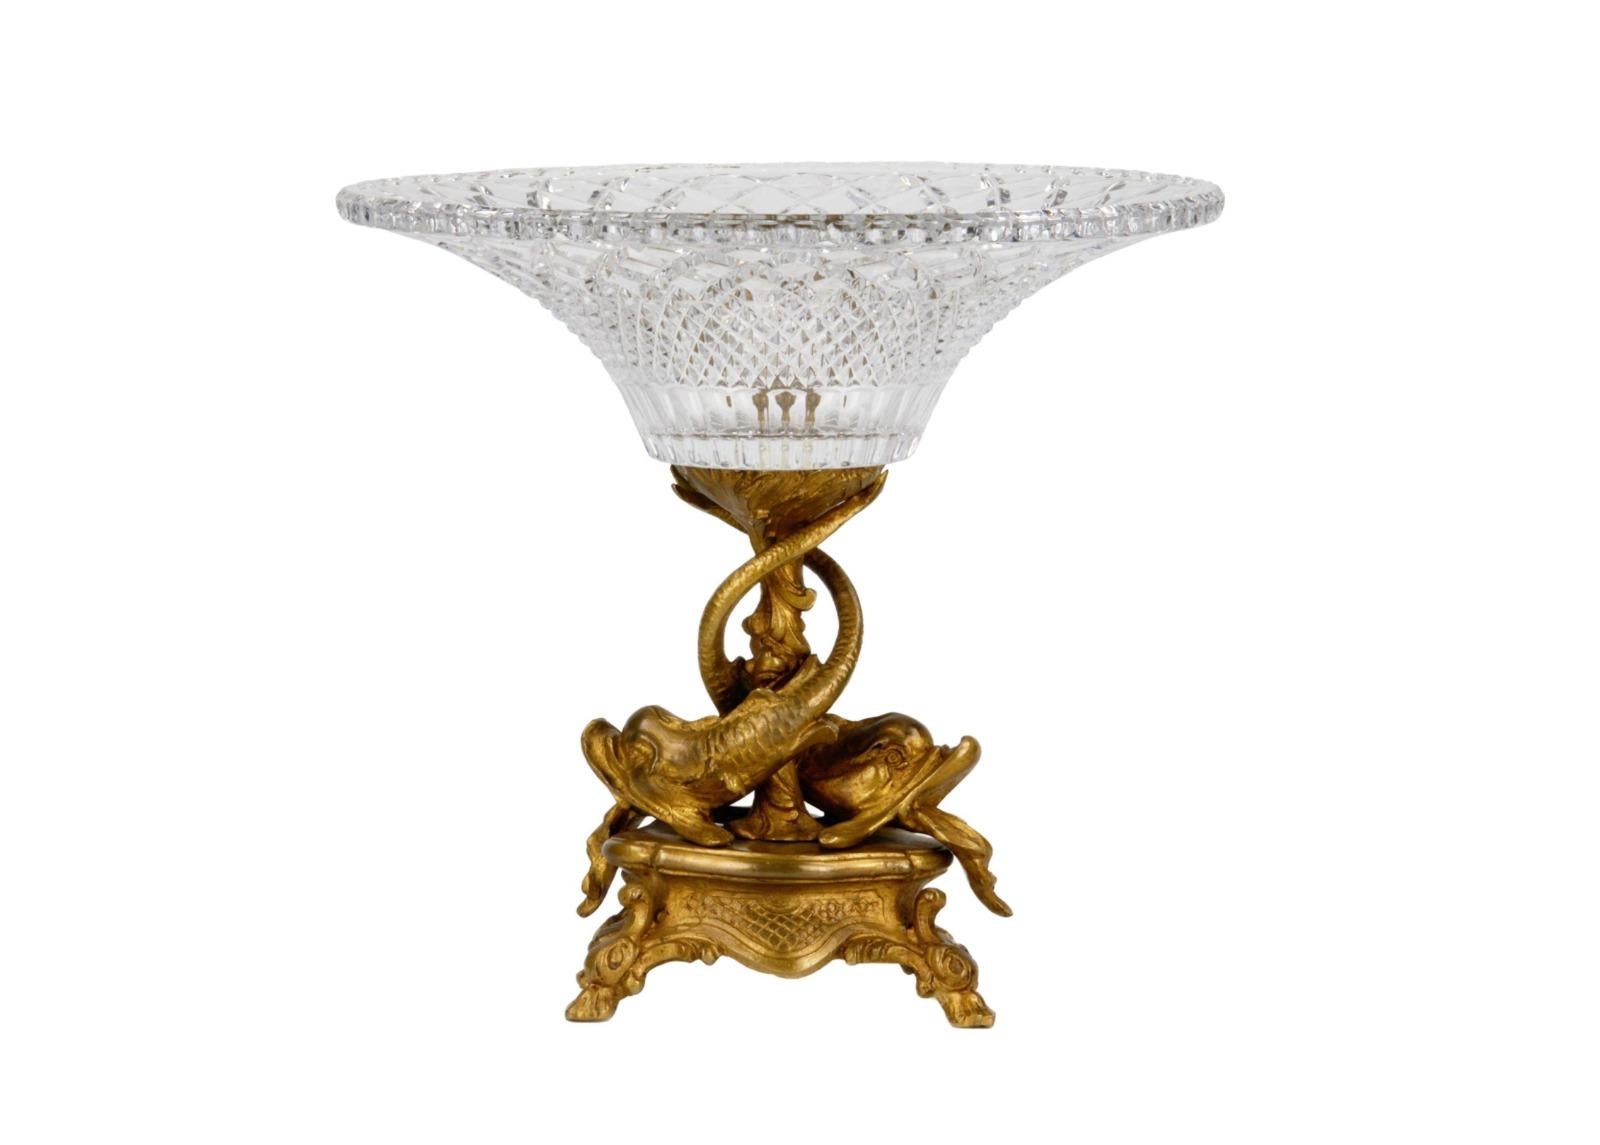 Grand vase à fruits Napoléon III - Empire 19ème siècle
en cristal et en bronze. 
Un pot de fleurs en cristal brillant est monté sur une tige en spirale formée par deux poissons nageurs. Bronzage français.
Largeur : 30cm, Hauteur : 29cm,